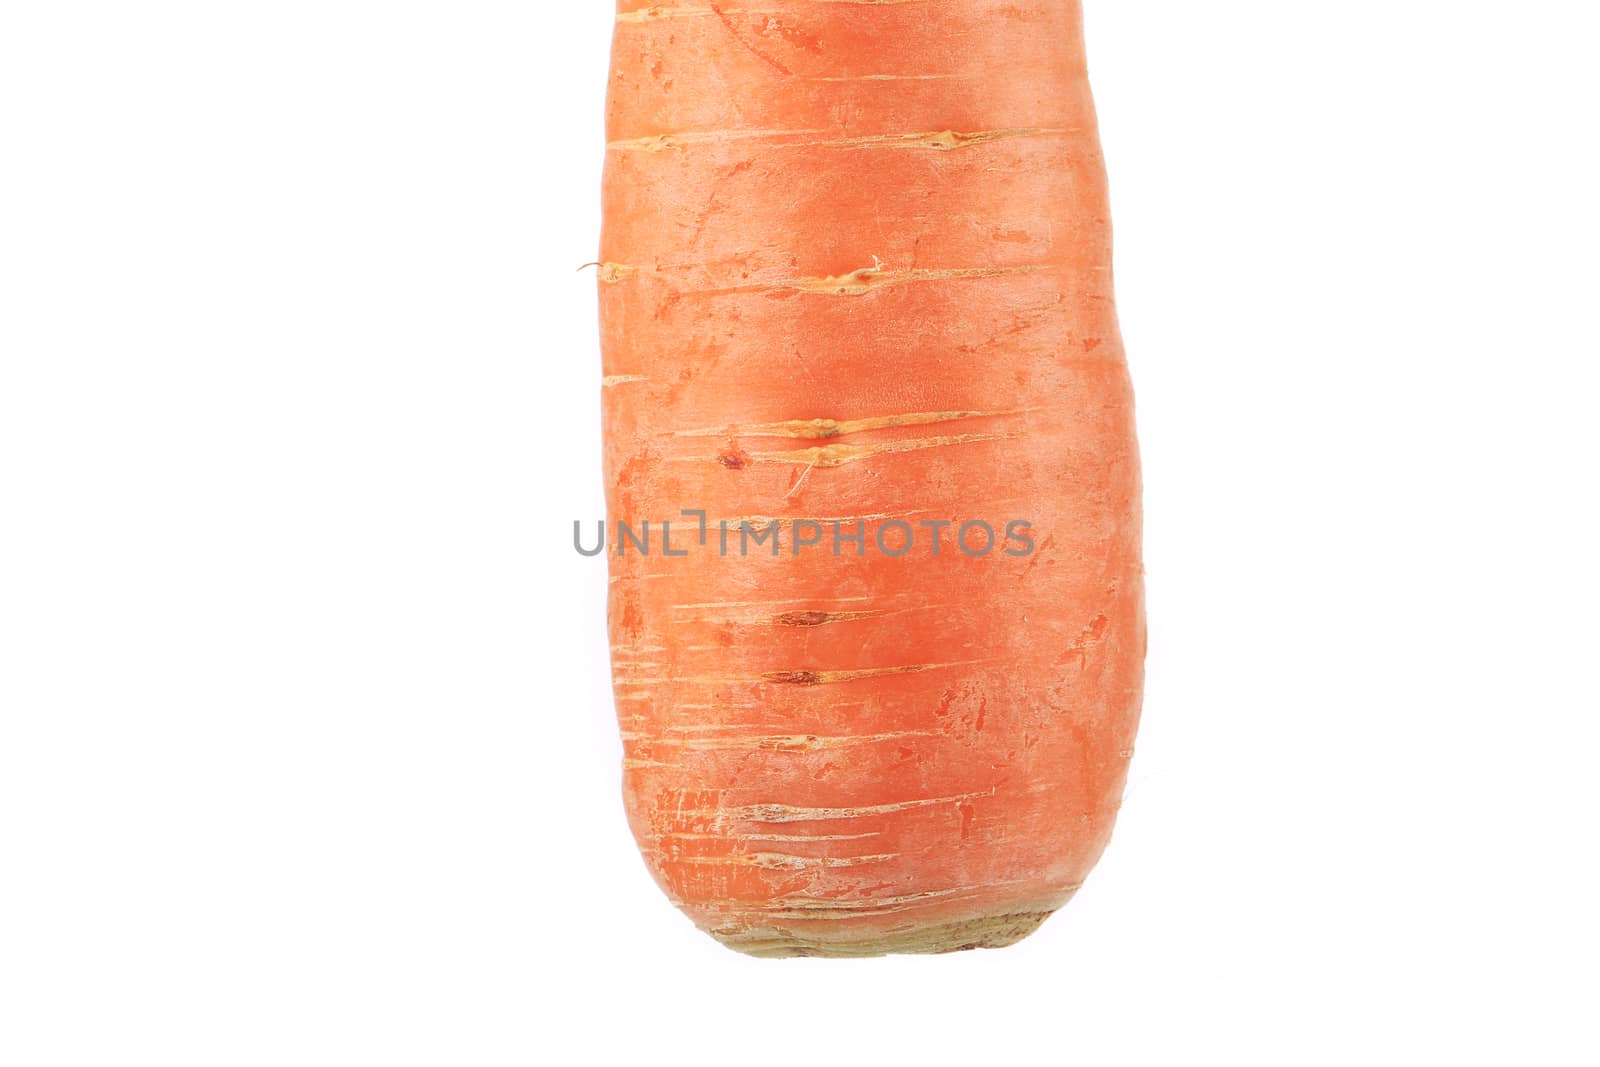 Fresh carrot. by indigolotos